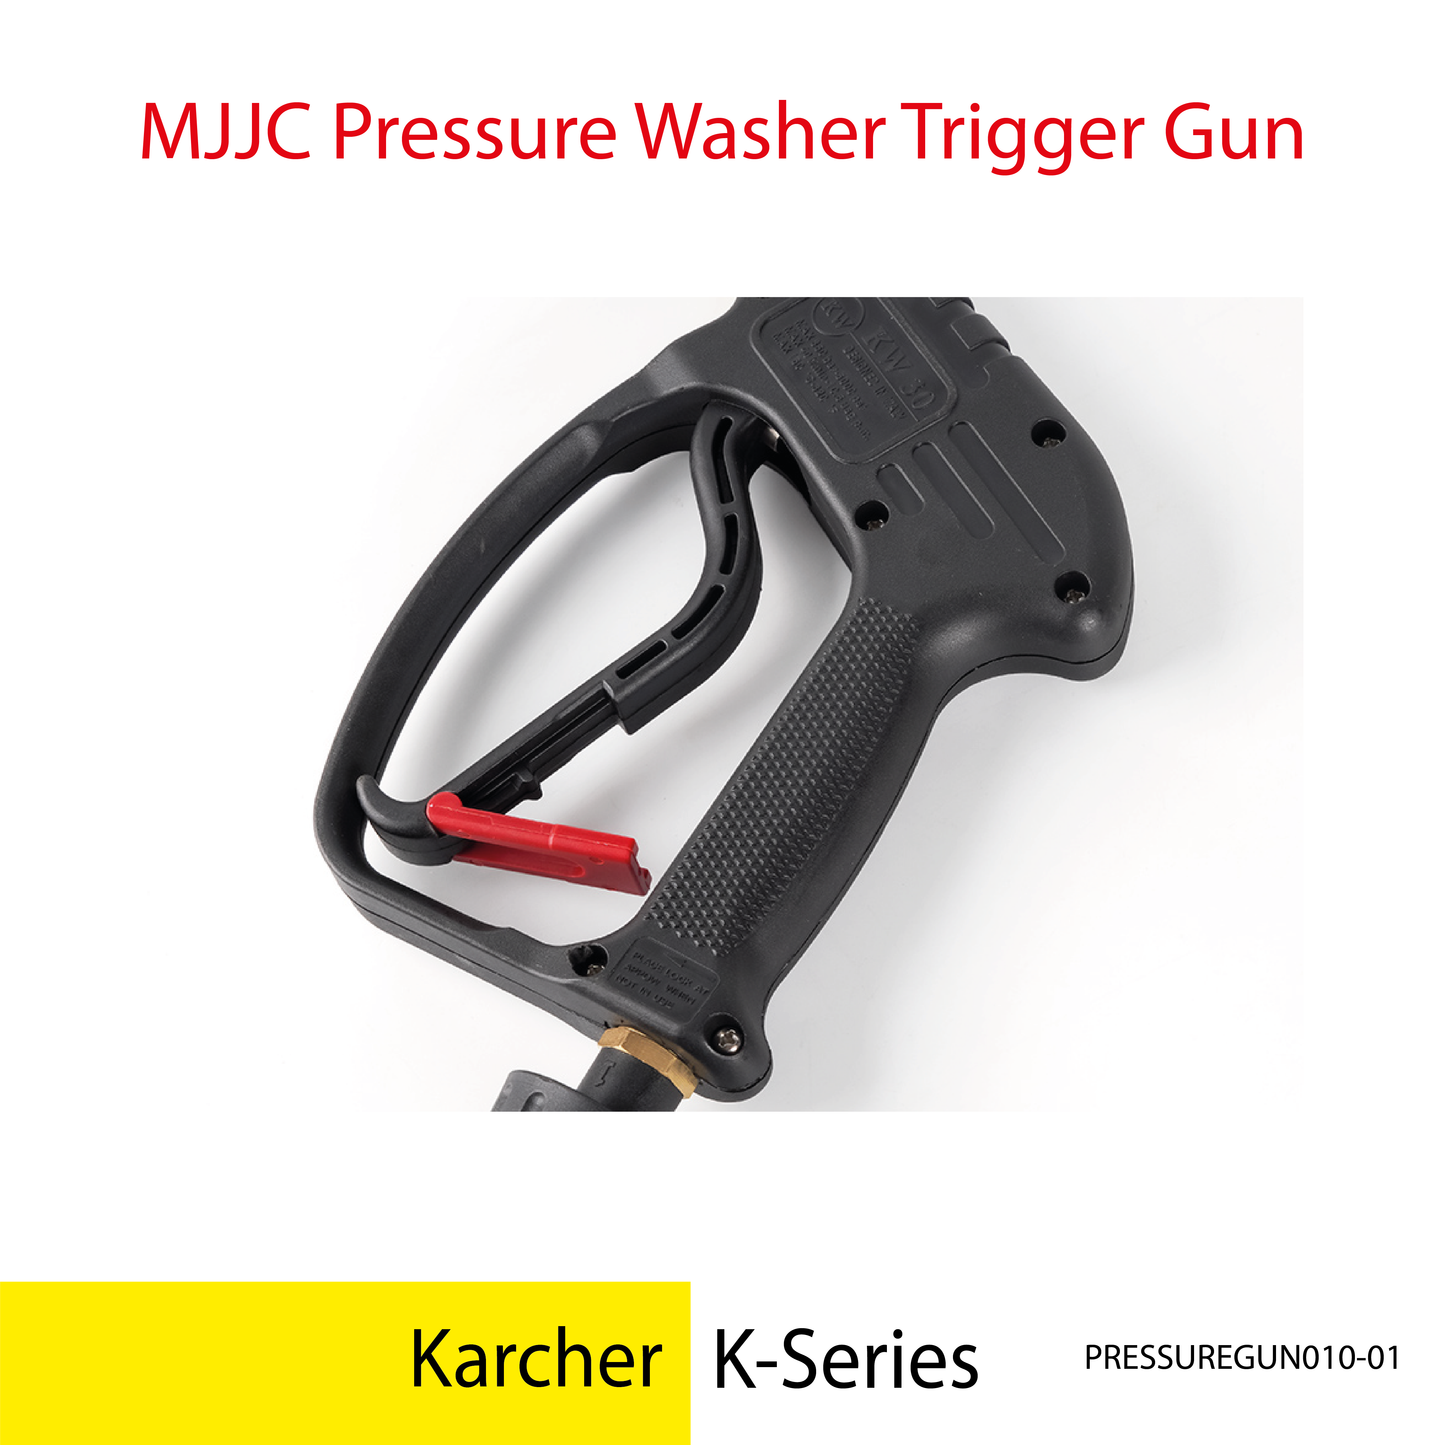 Karcher K-Series - MJJC  Light Weight Pressure Washer Trigger Spray Gun with Live Swivel